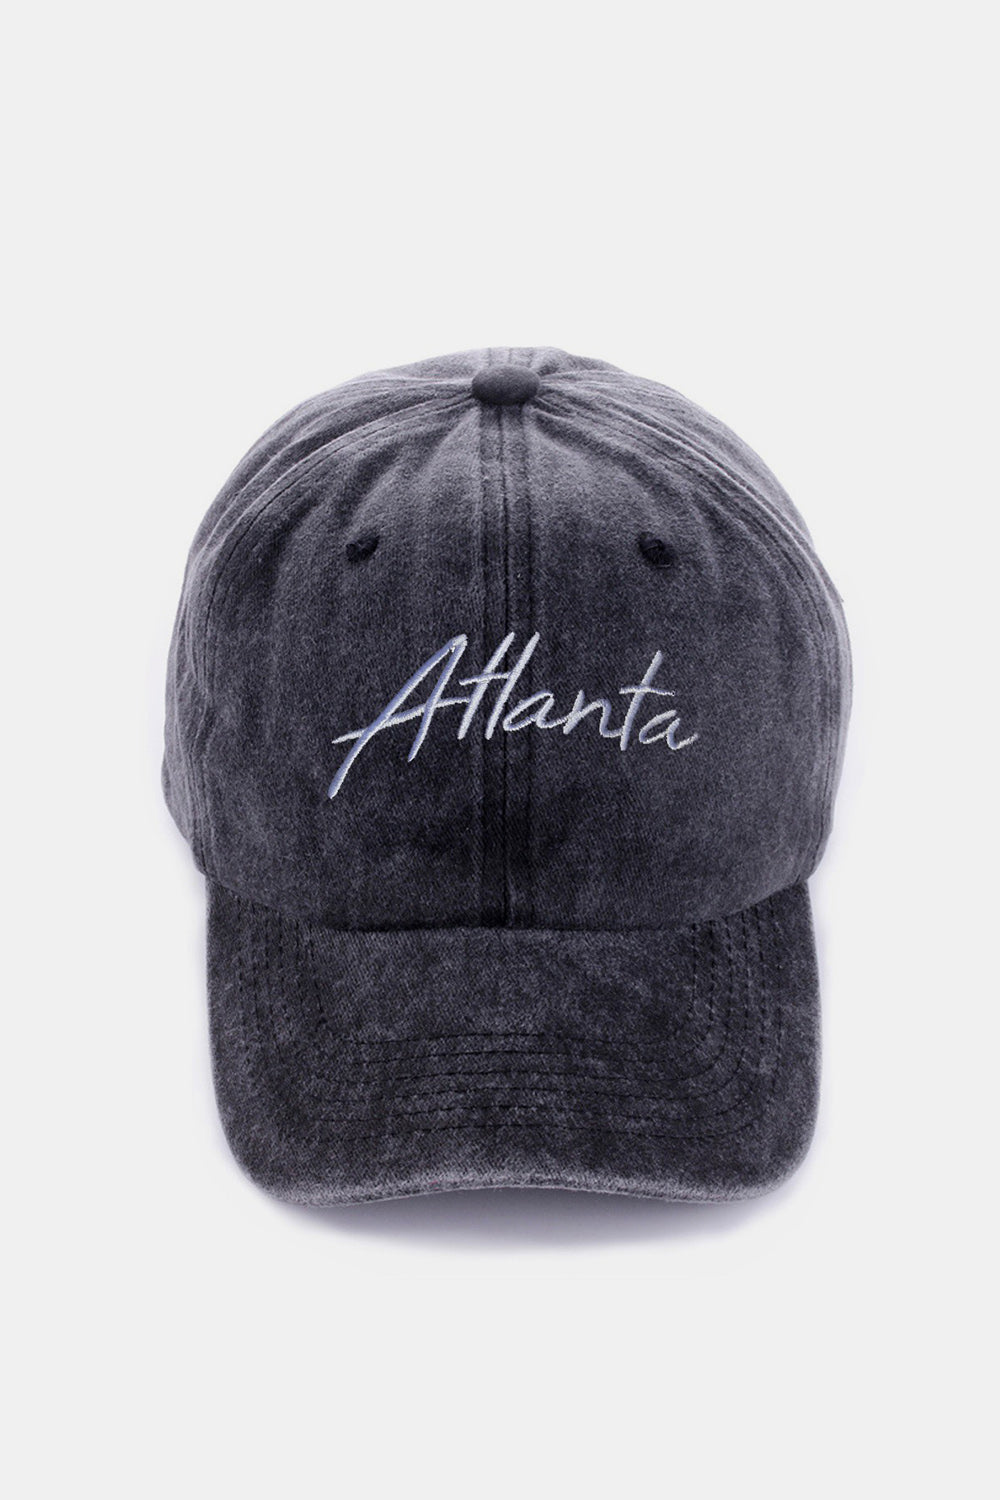 Zenana Washed ATLANTA Embroidered Baseball Cap Sunset and Swim Atlanta Black One Size 